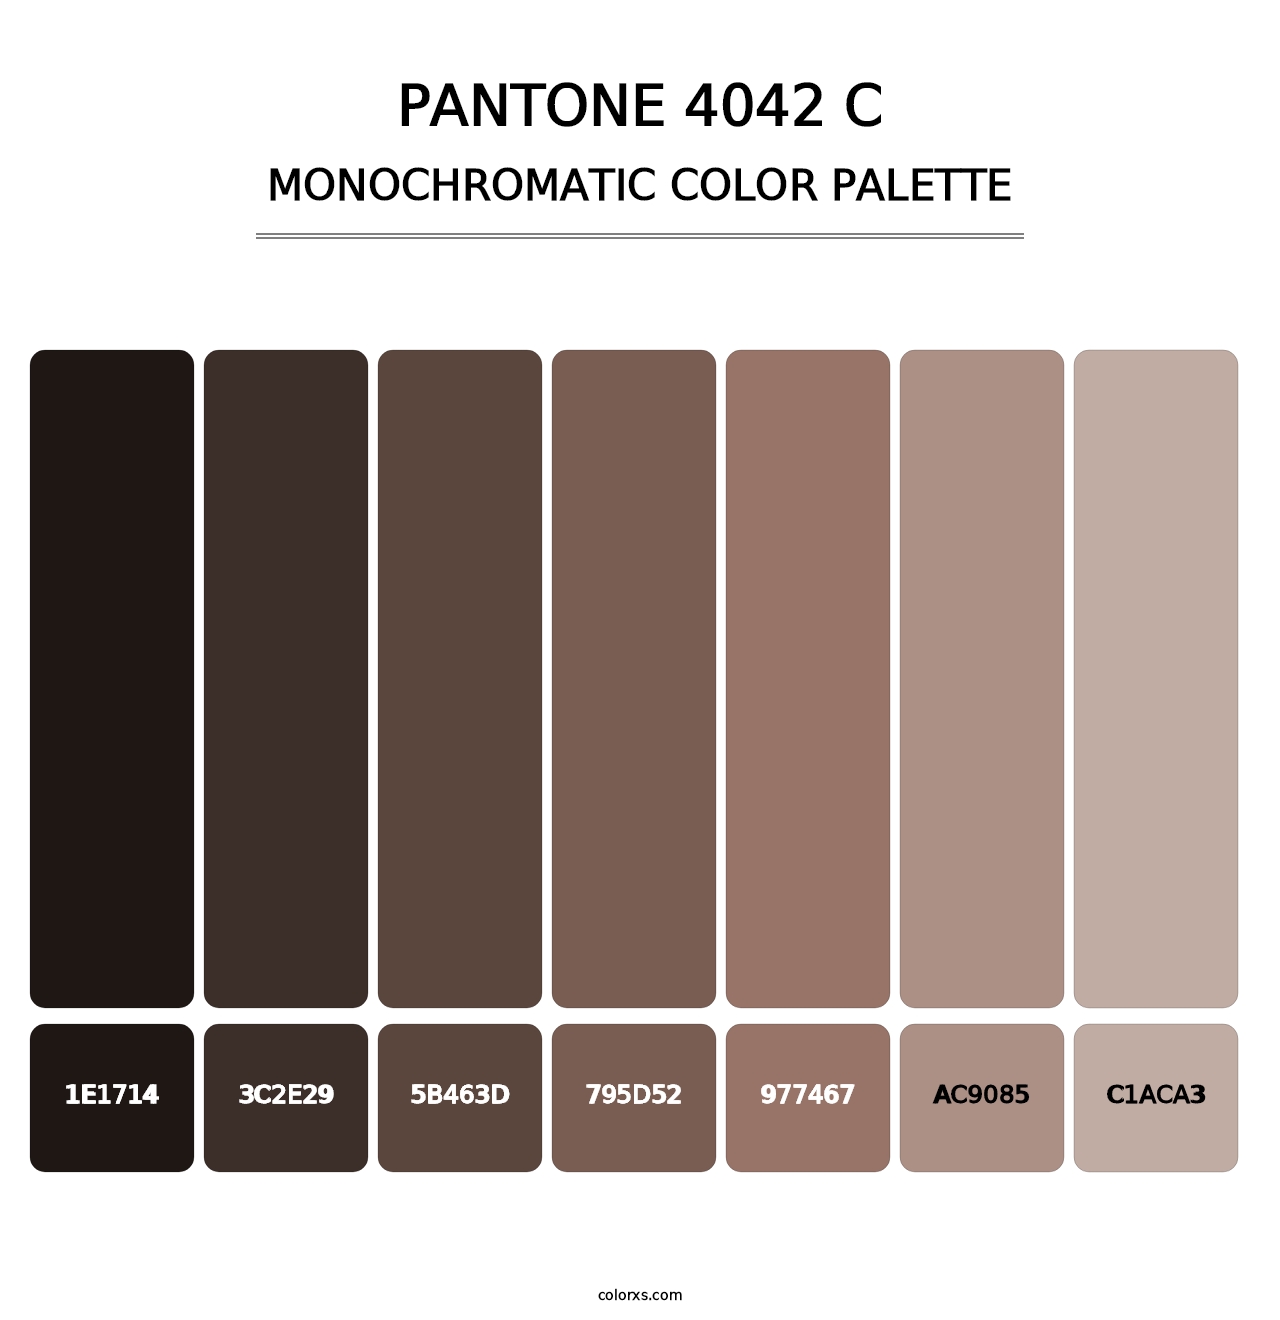 PANTONE 4042 C - Monochromatic Color Palette